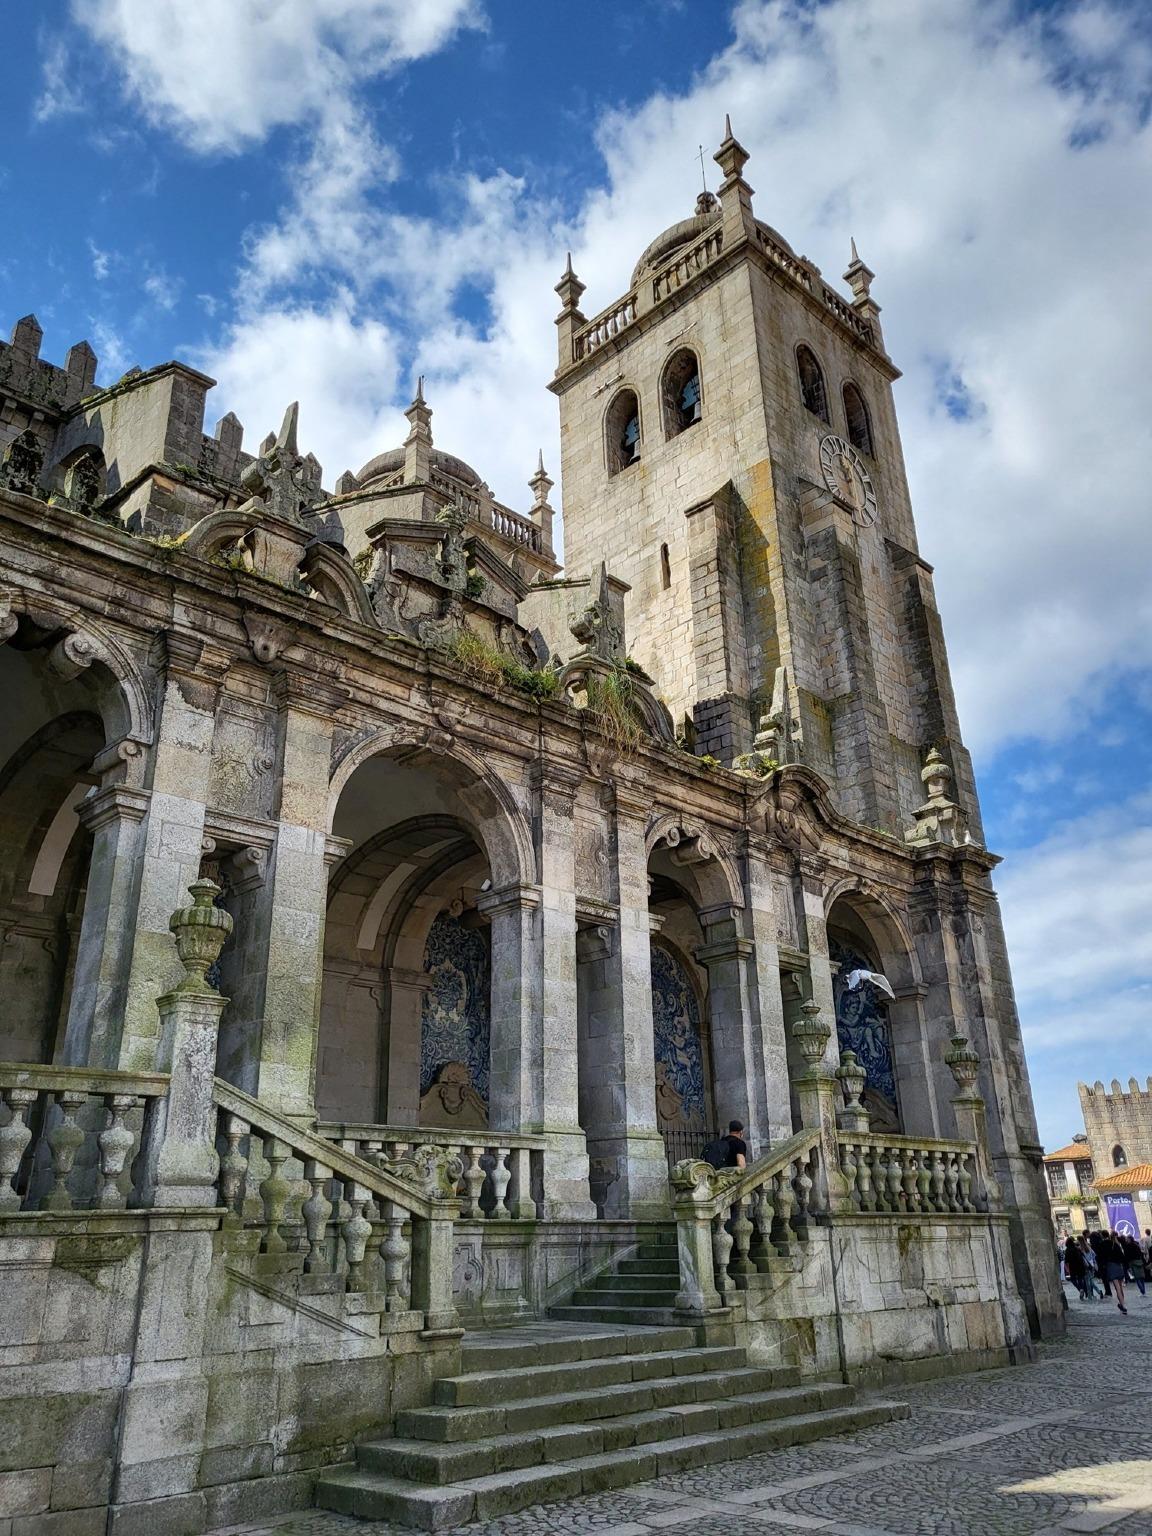 Maravilhe-se com os pormenores intrincados e a beleza intemporal da Catedral do Porto